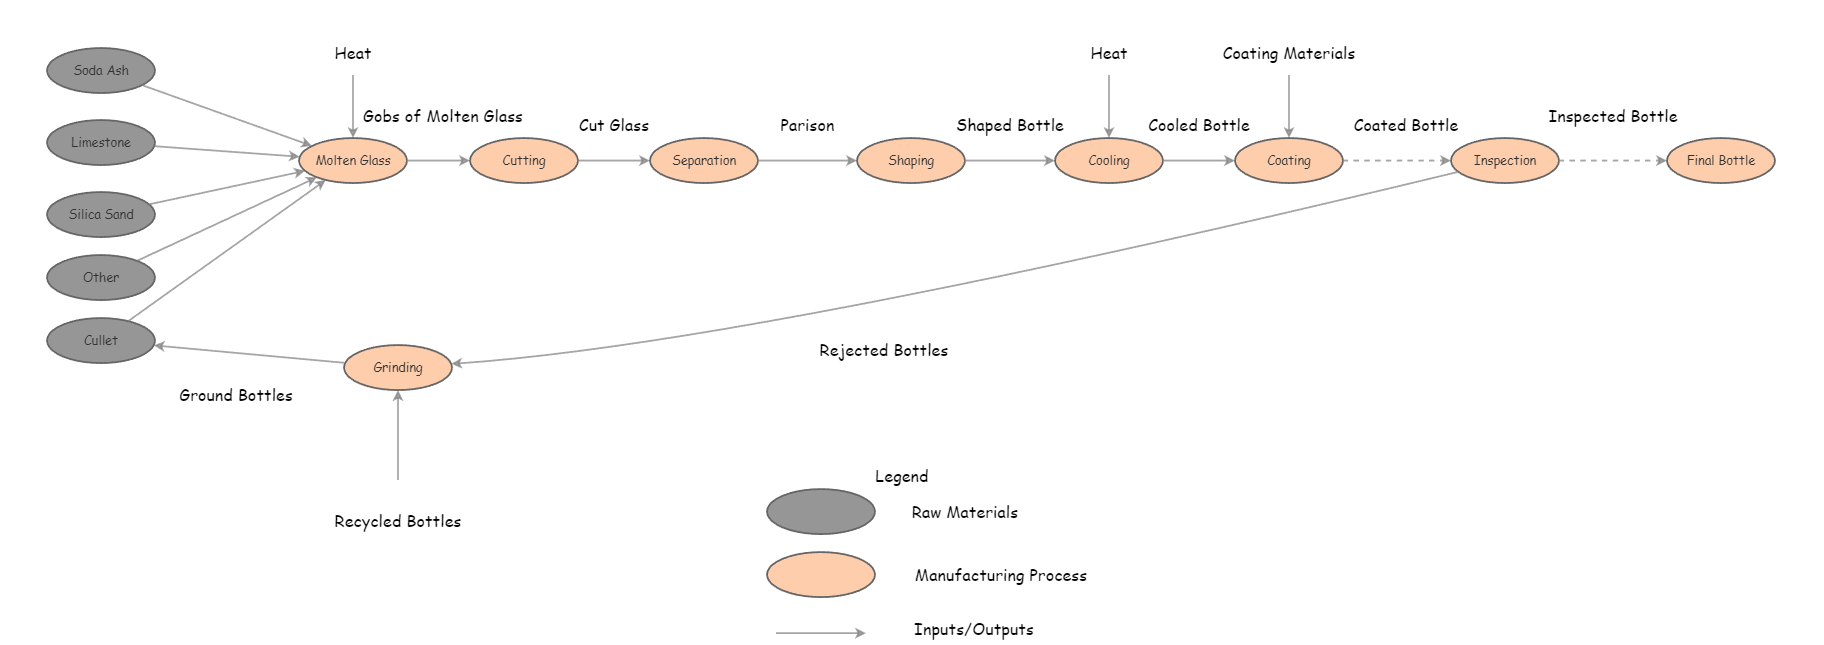 Diagramma di flusso del processo delle bottiglie di vetro